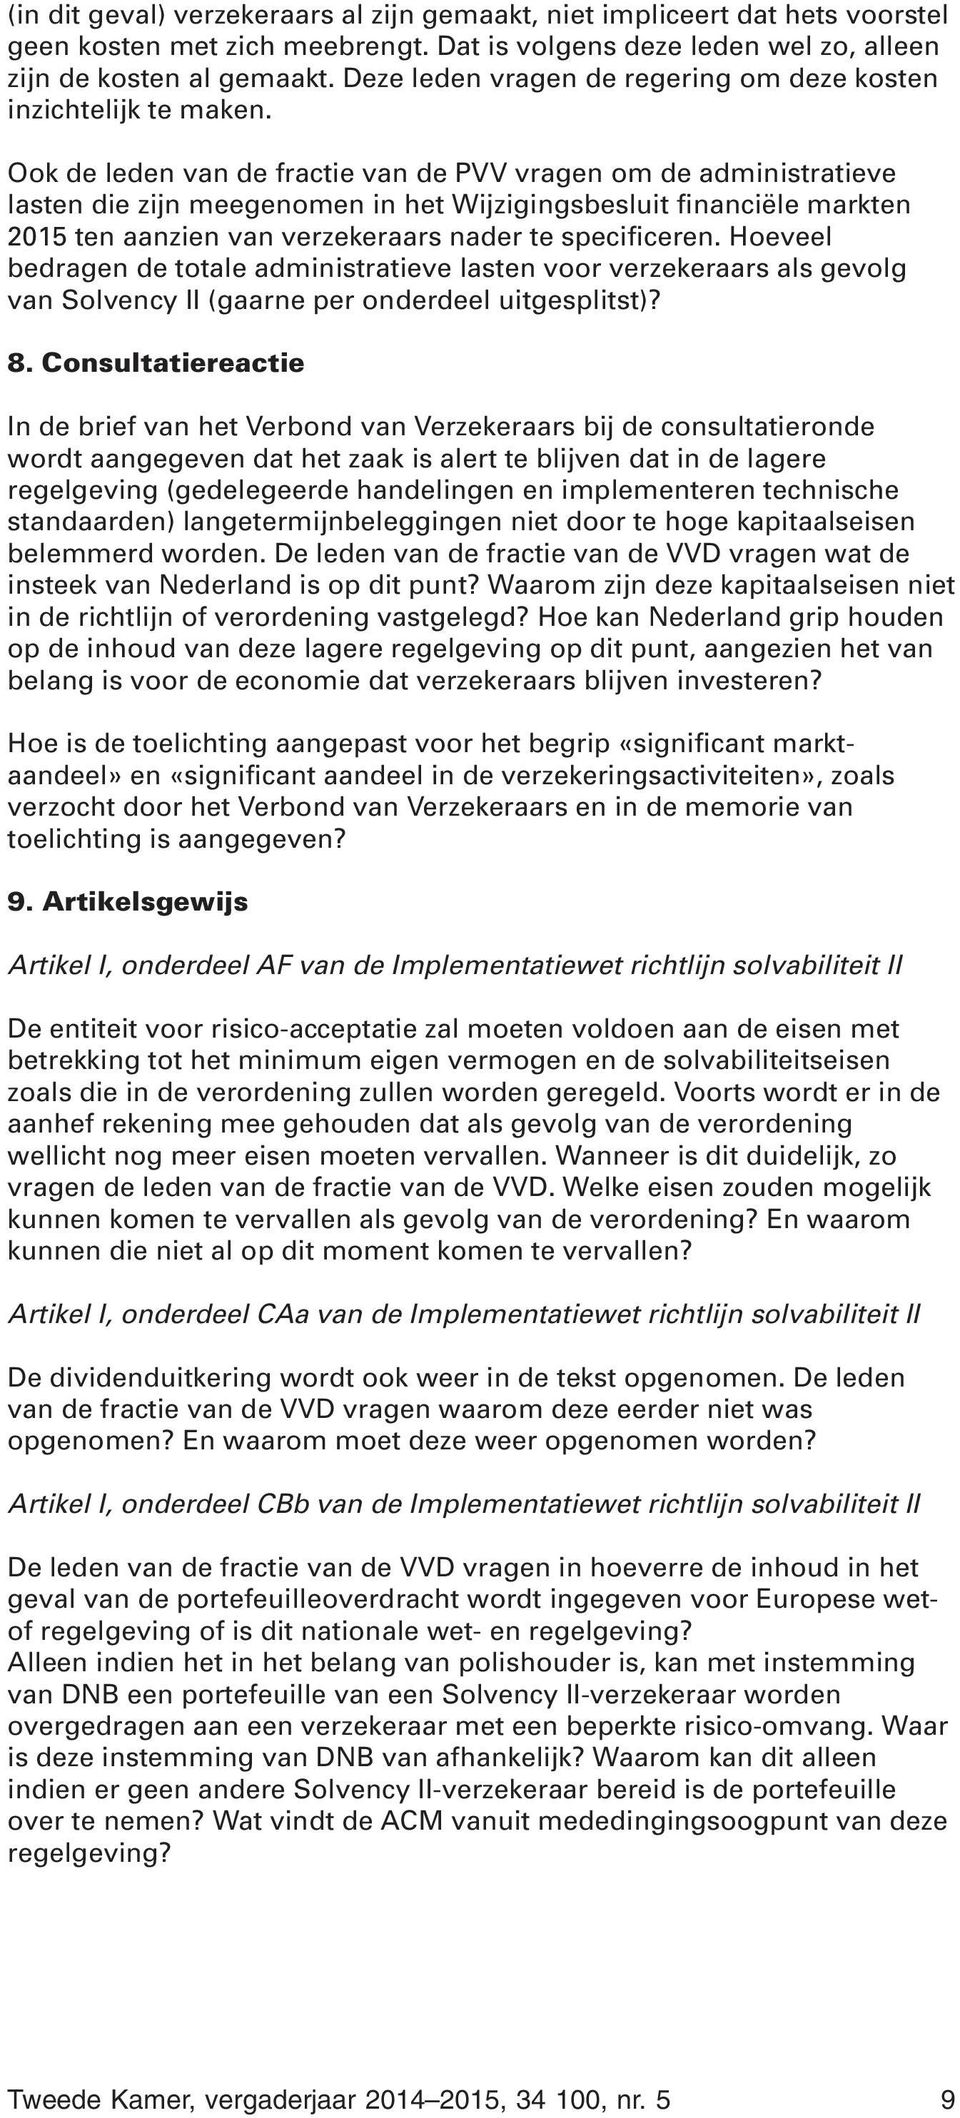 Ook de leden van de fractie van de PVV vragen om de administratieve lasten die zijn meegenomen in het Wijzigingsbesluit financiële markten 2015 ten aanzien van verzekeraars nader te specificeren.